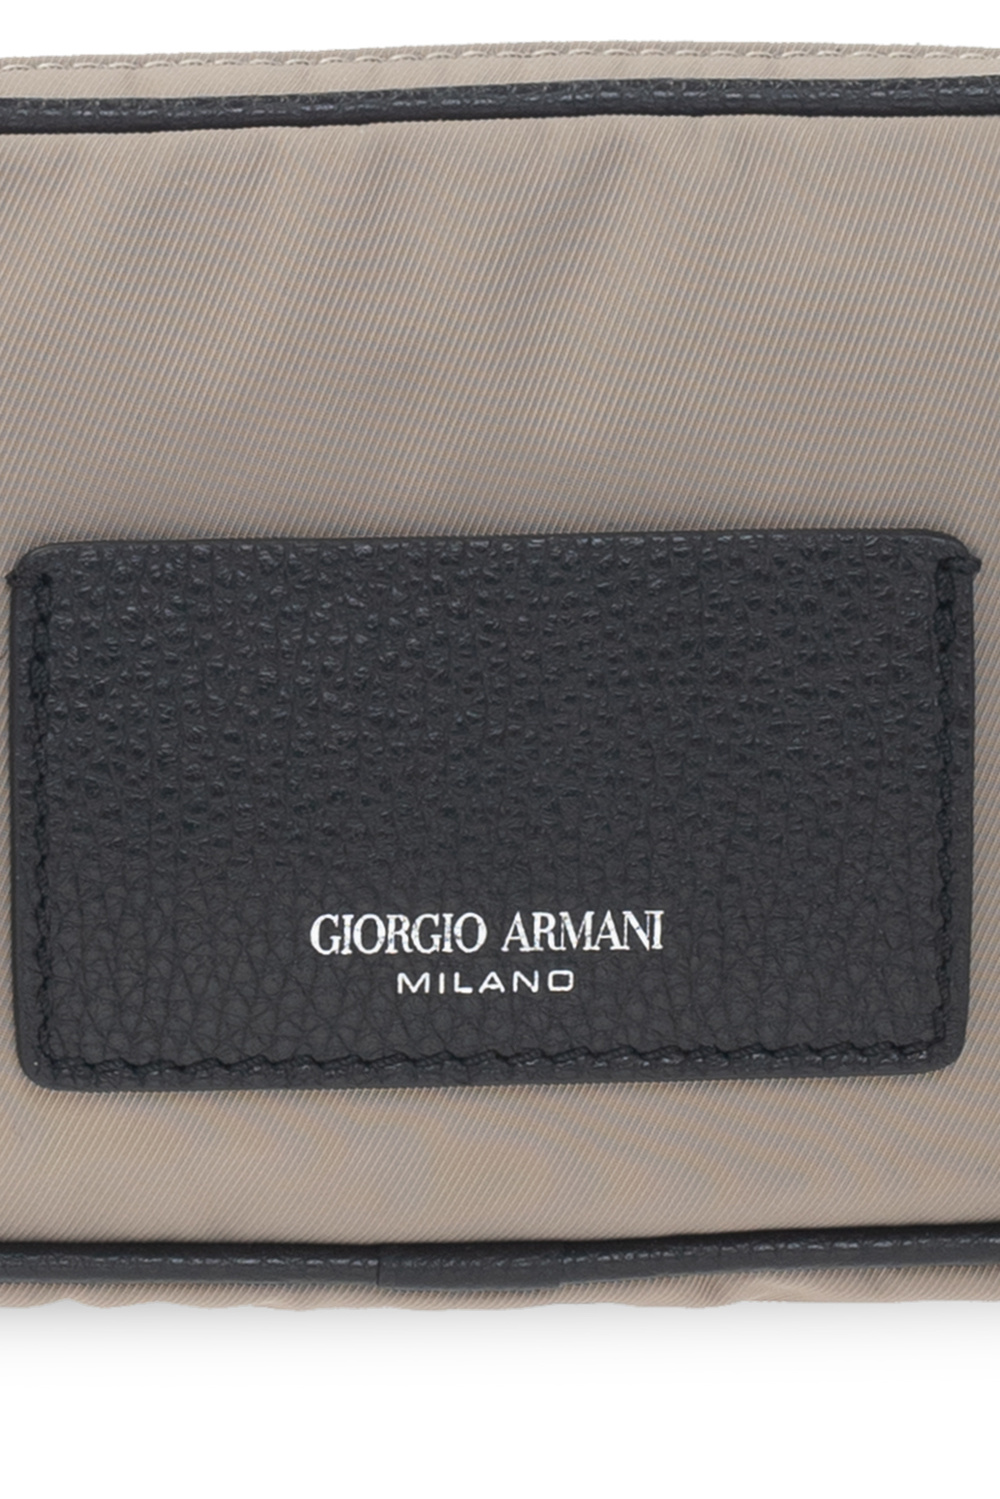 Giorgio Armani Emporio Armani Ea7 C2 Ultimate Sneakers